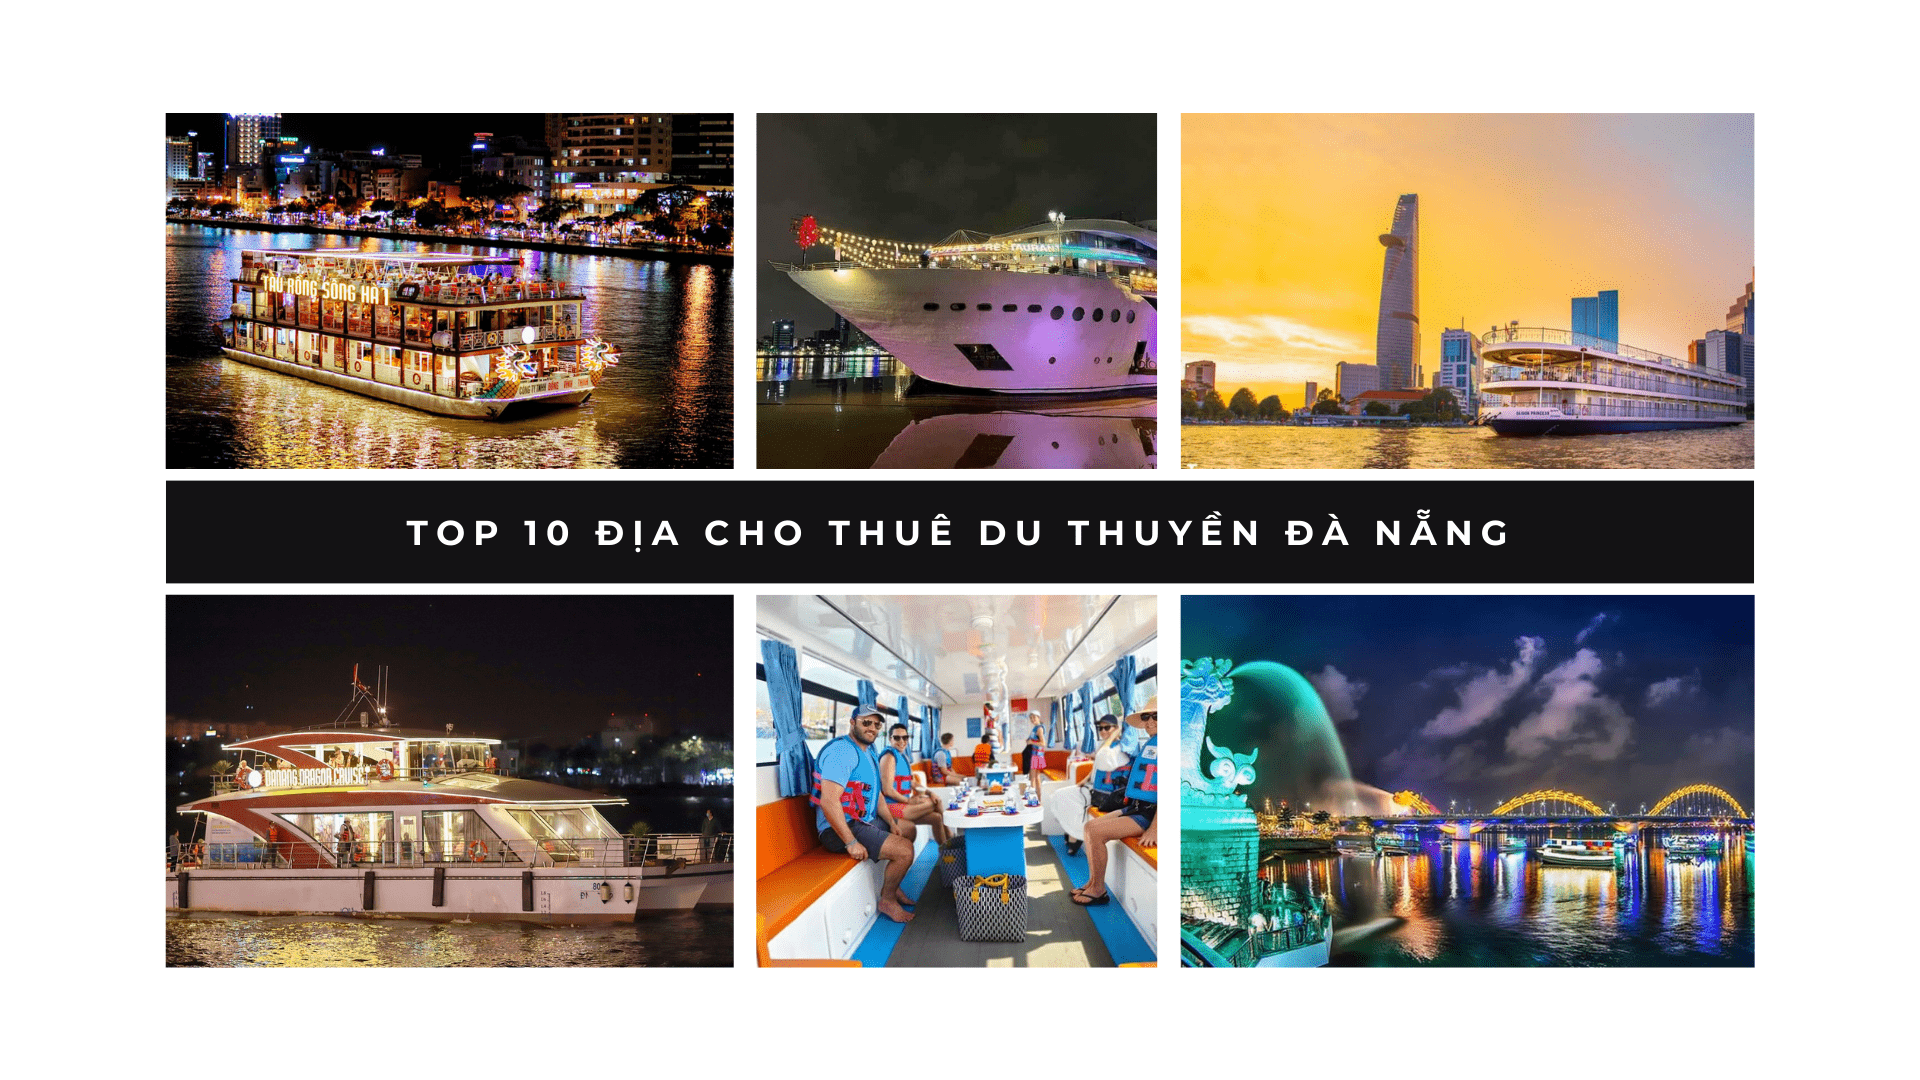 8+ Địa điểm cho thuê du thuyền Đà Nẵng cao cấp